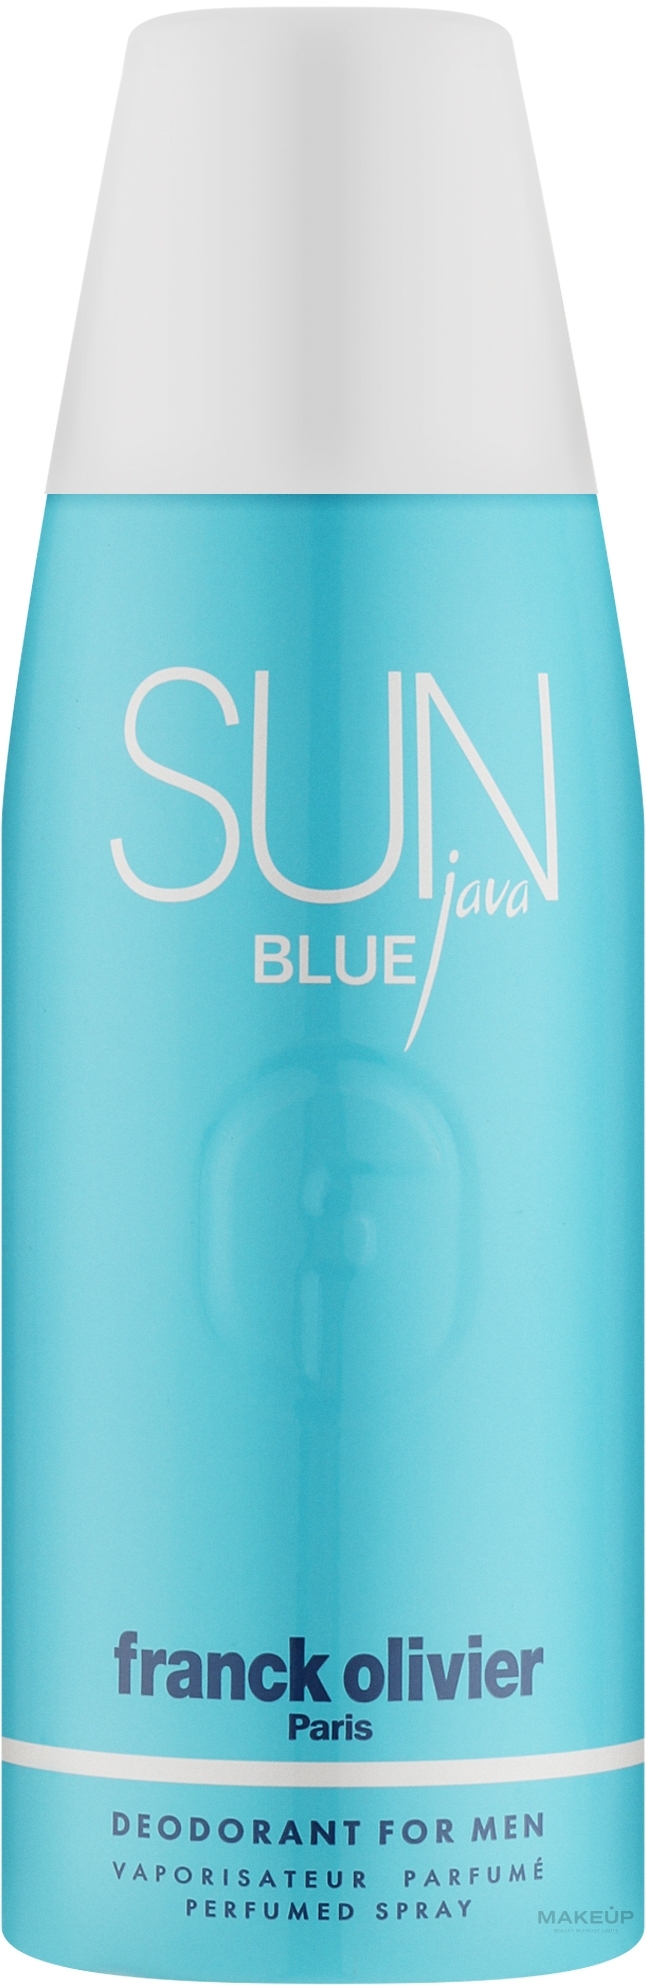 Franck Olivier Sun Java Blue - Deodorant — photo 250 ml